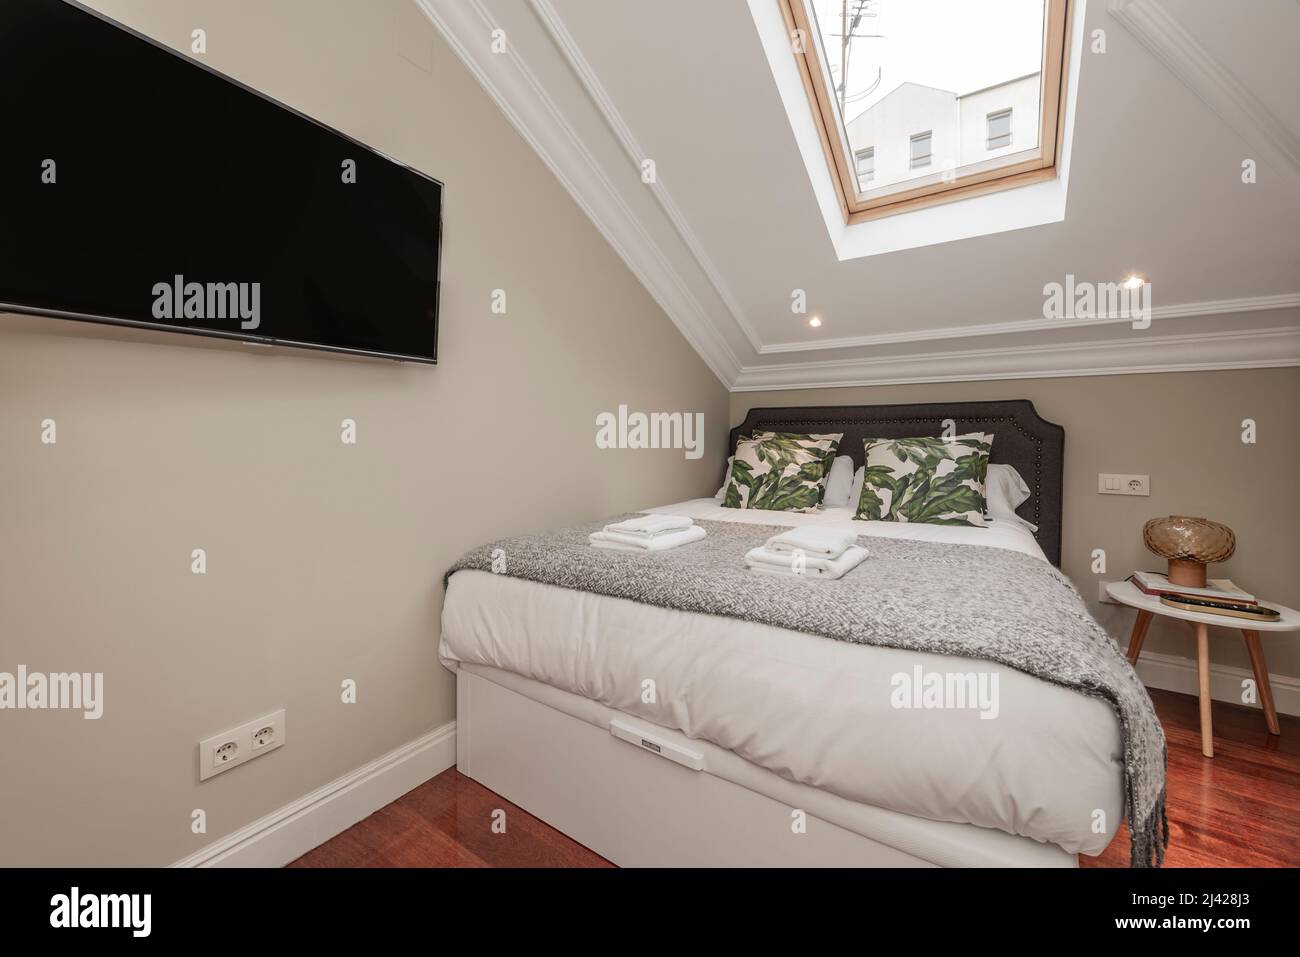 Chambre avec lit double avec coussins et couvertures en denim, coussins verts, lucarne au plafond, tv accrochée au mur, serviettes blanches dans le grenier Banque D'Images